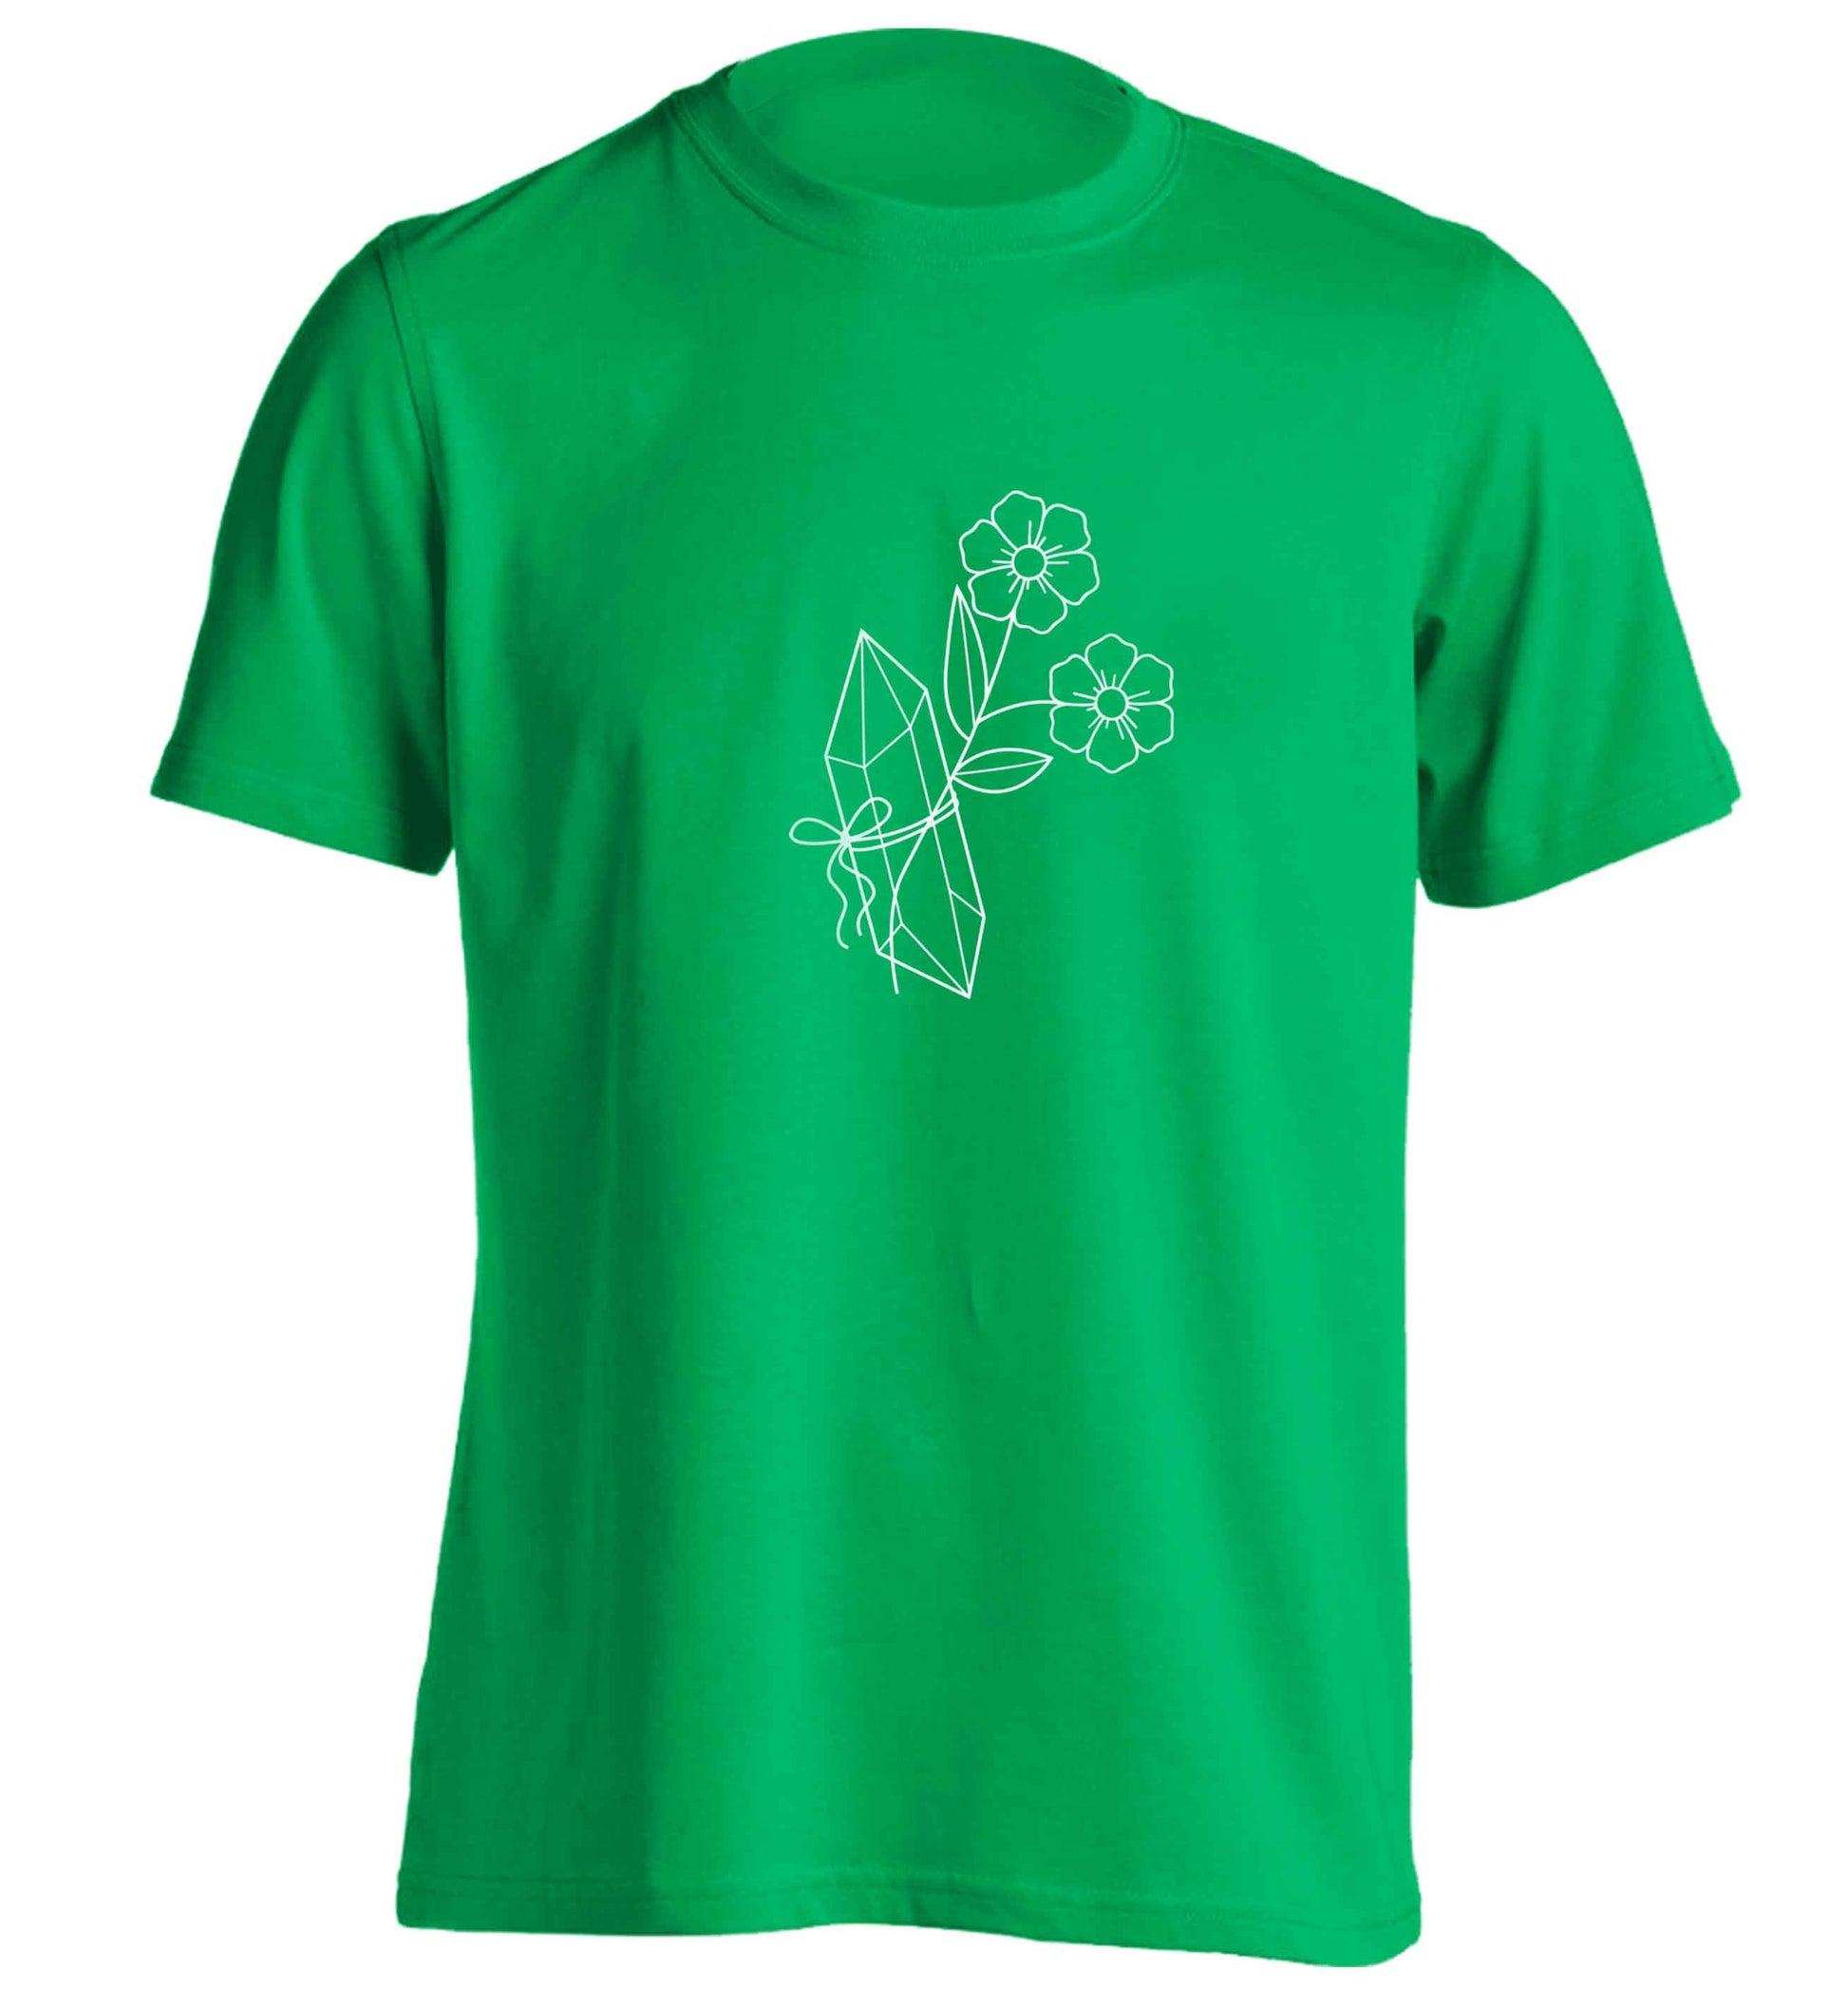 Crystal flower illustration adults unisex green Tshirt 2XL